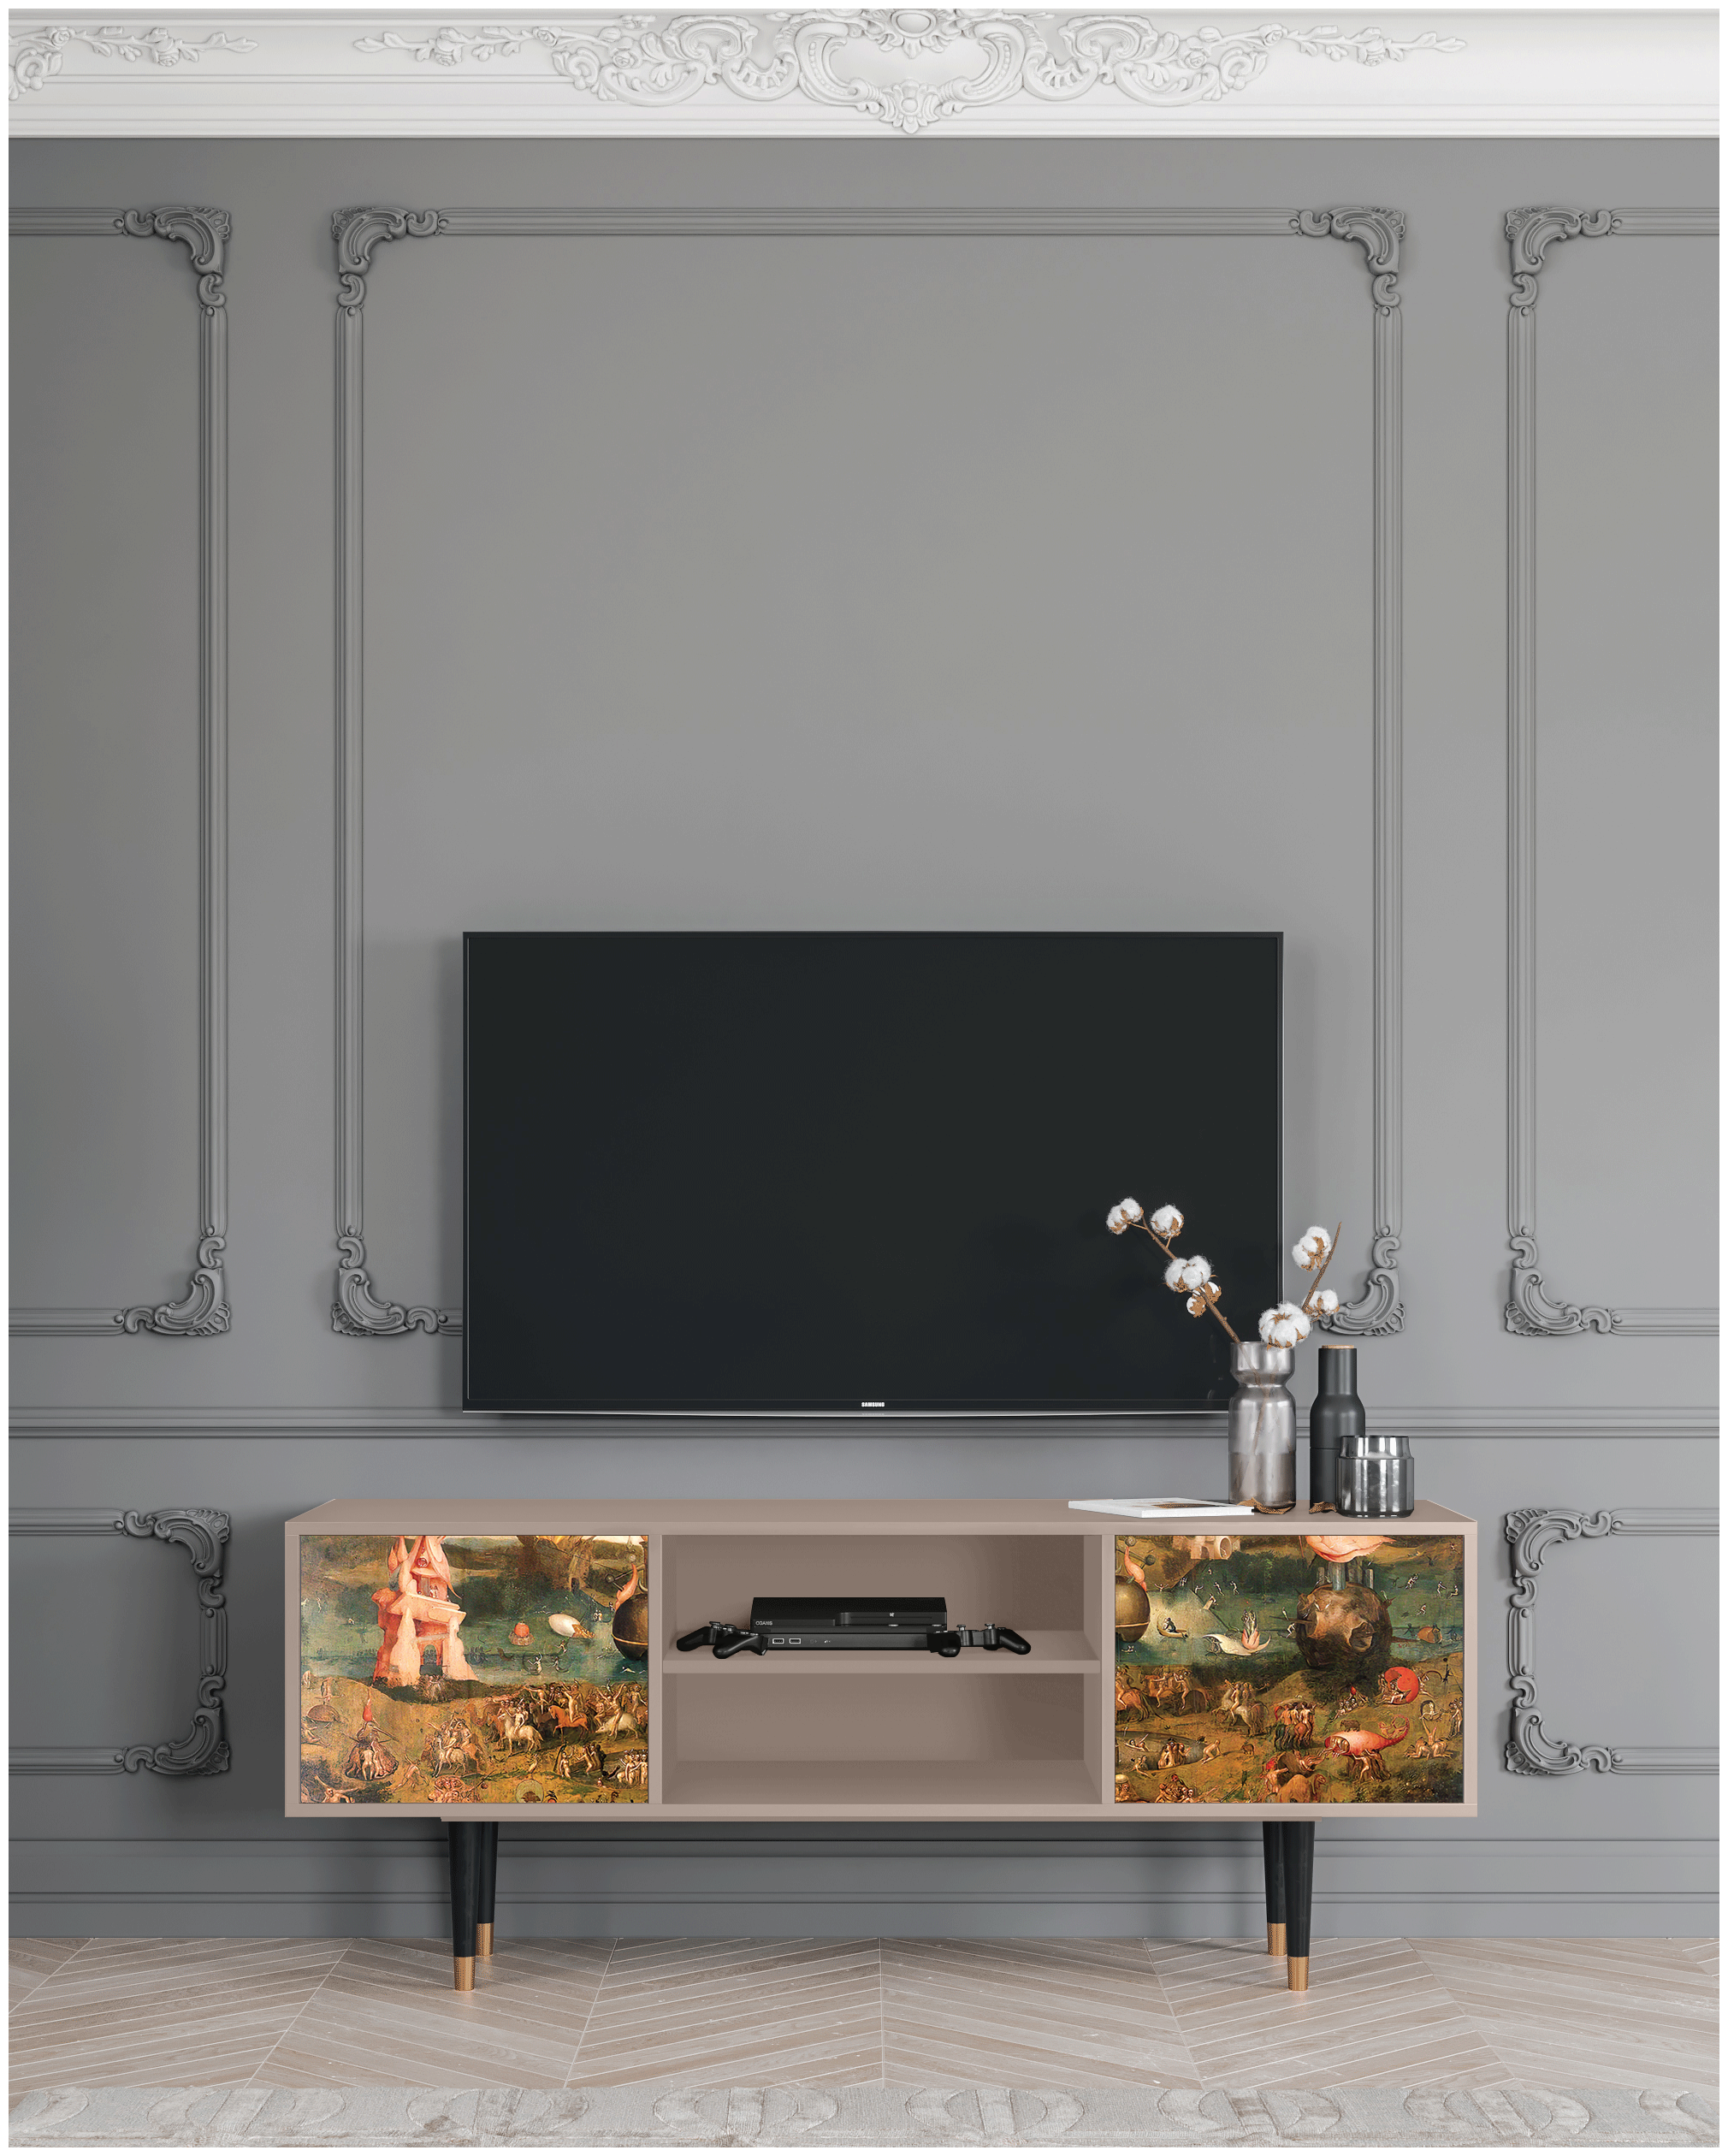 ТВ-Тумба - STORYZ - T2 Garden of Earthly Delights by Hieronymus Bosch, 170 x 69 x 48 см, Бежевый